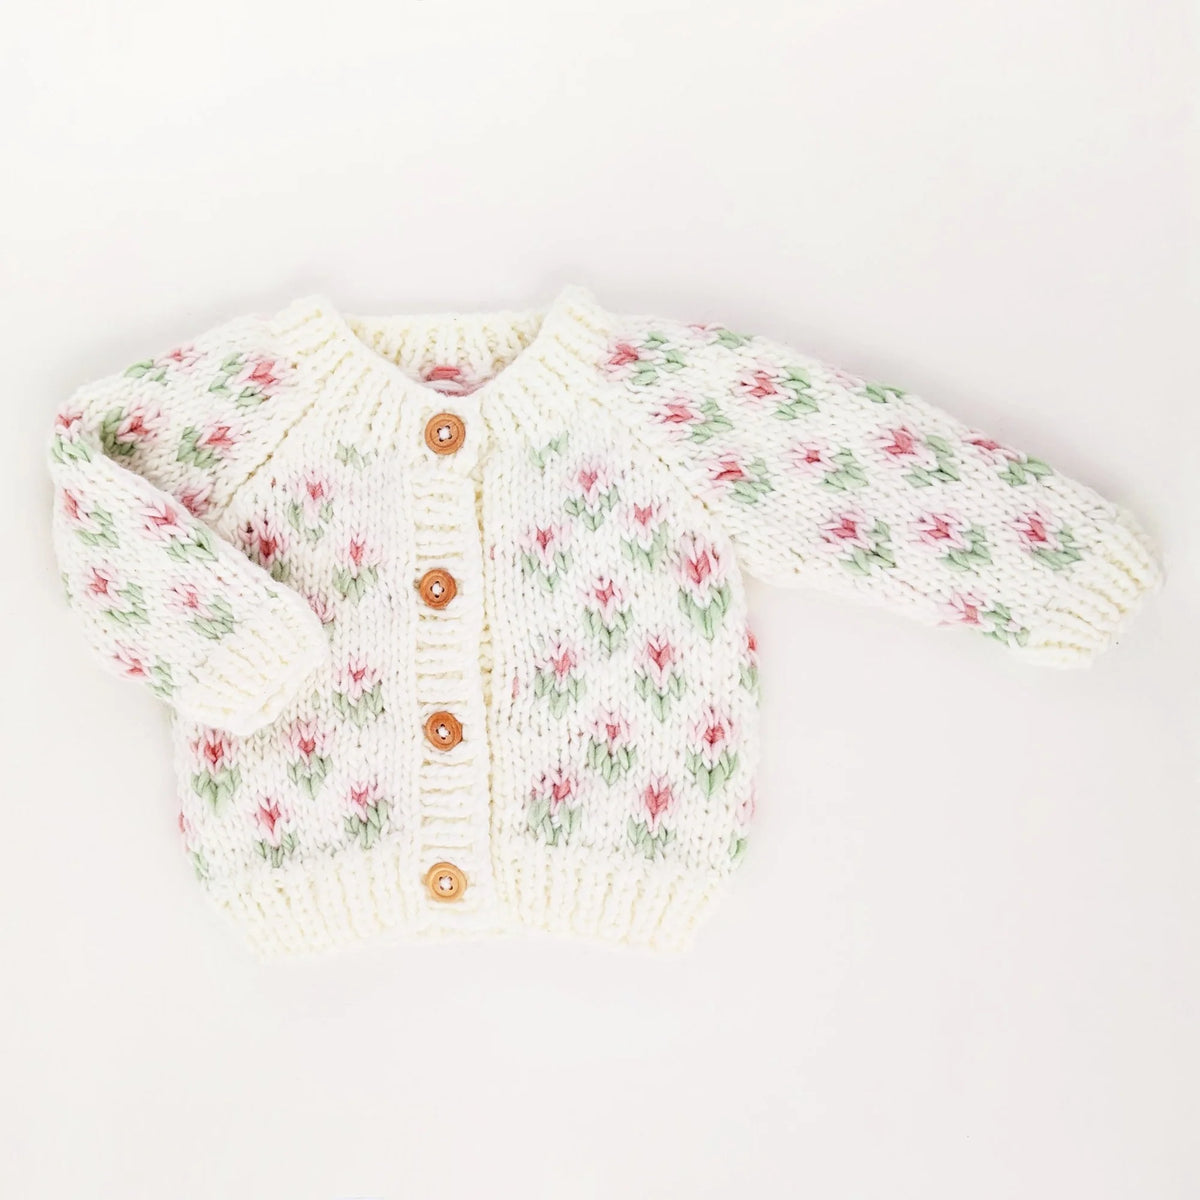 Huggalugs Bitty Blooms Blush Cardigan Sweater